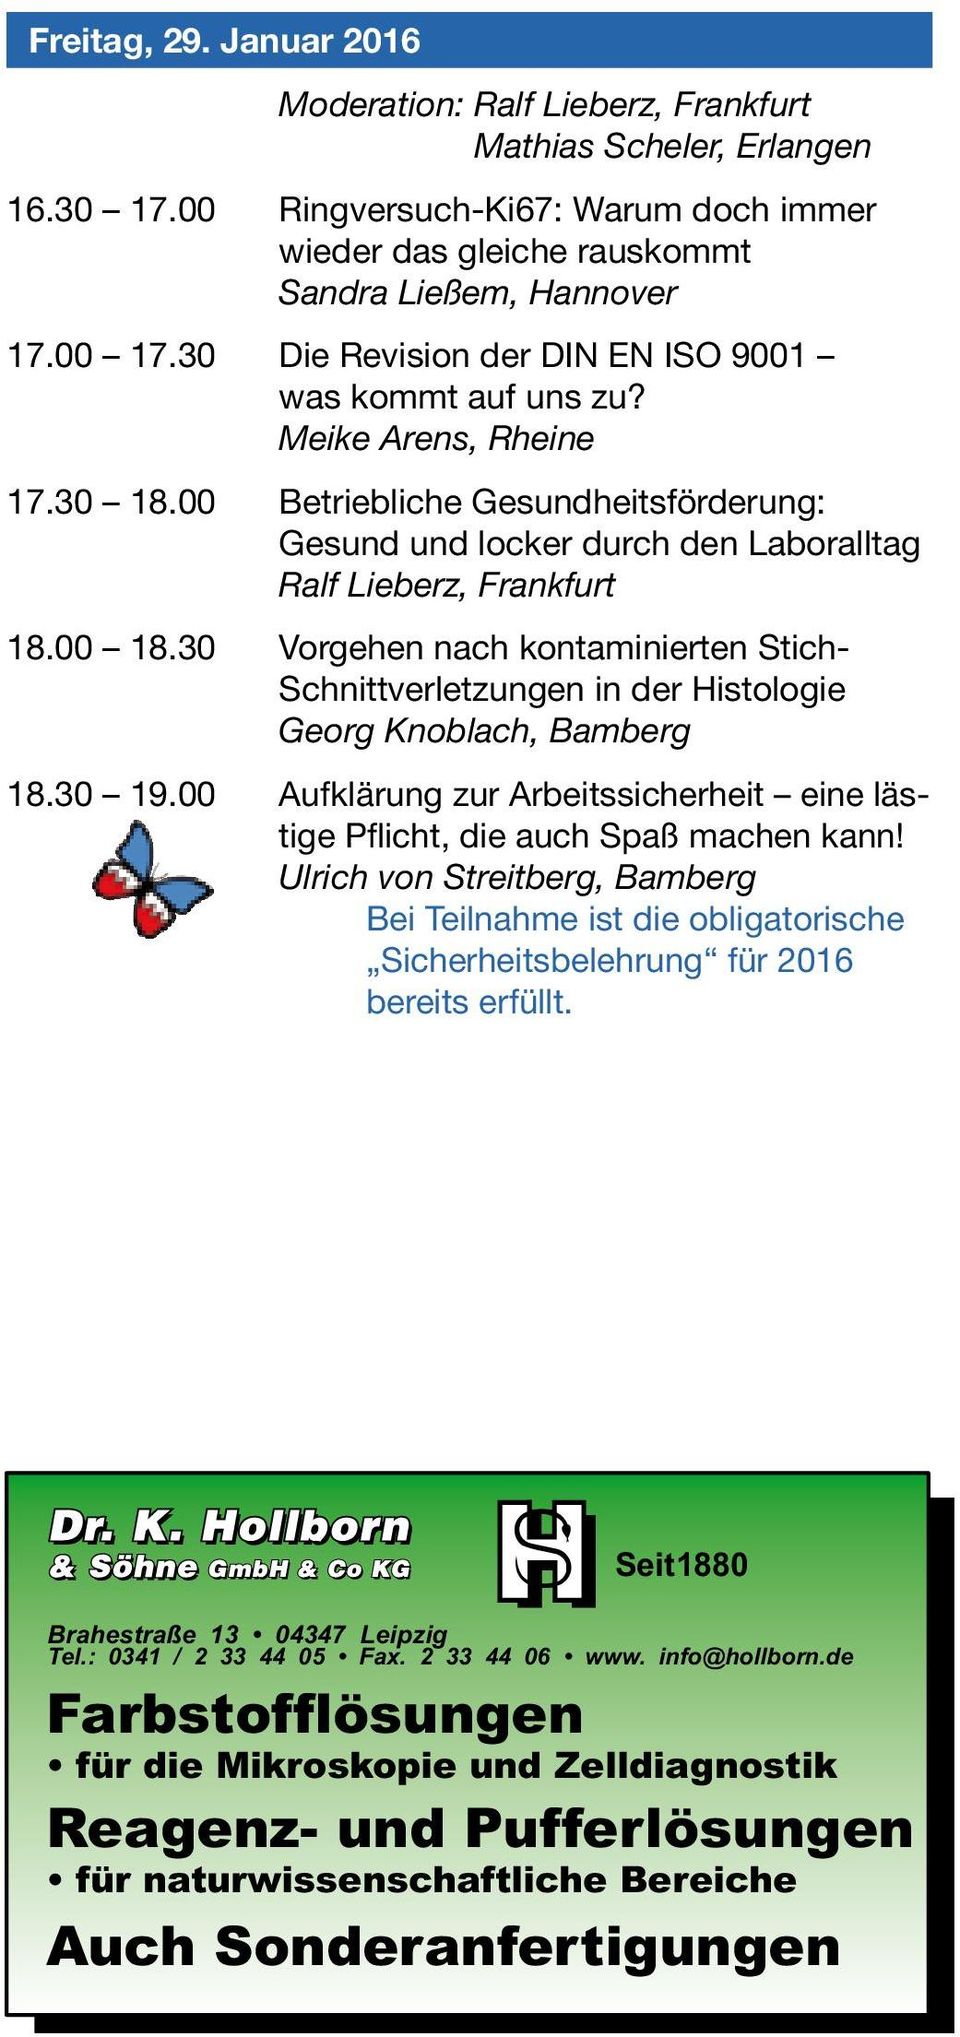 30 Vorgehen nach kontaminierten Stich- Schnittverletzungen in der Histologie Georg Knoblach, Bamberg 18.30 19.00 Aufklärung zur Arbeitssicherheit eine lästige Pflicht, die auch Spaß machen kann!